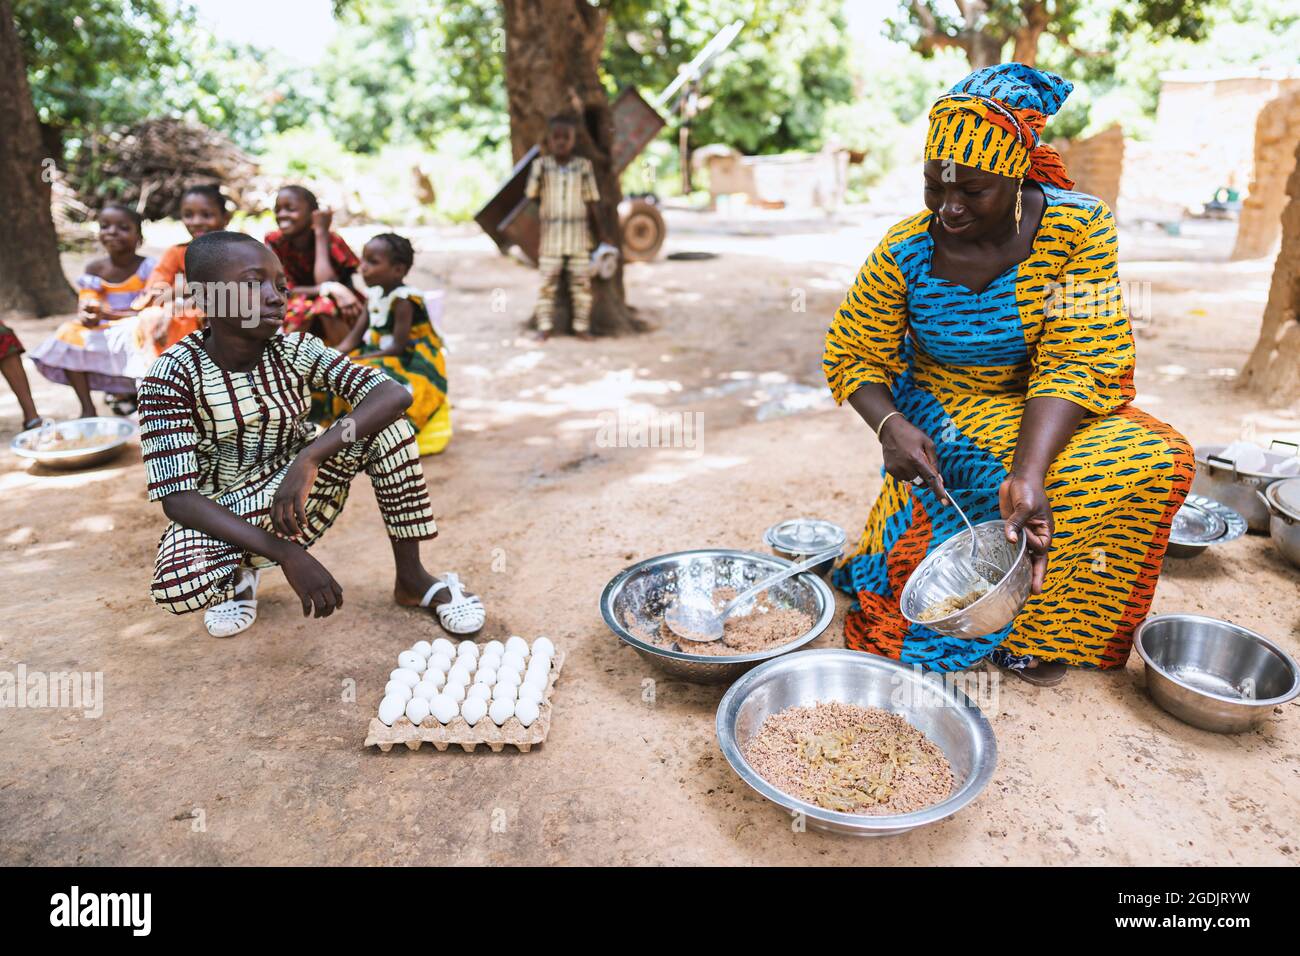 Souriante, femme africaine noire assise sur un petit chiar, divisant le repas de sa famille, son fils s'agenouillant à côté d'elle en attendant son bol Banque D'Images